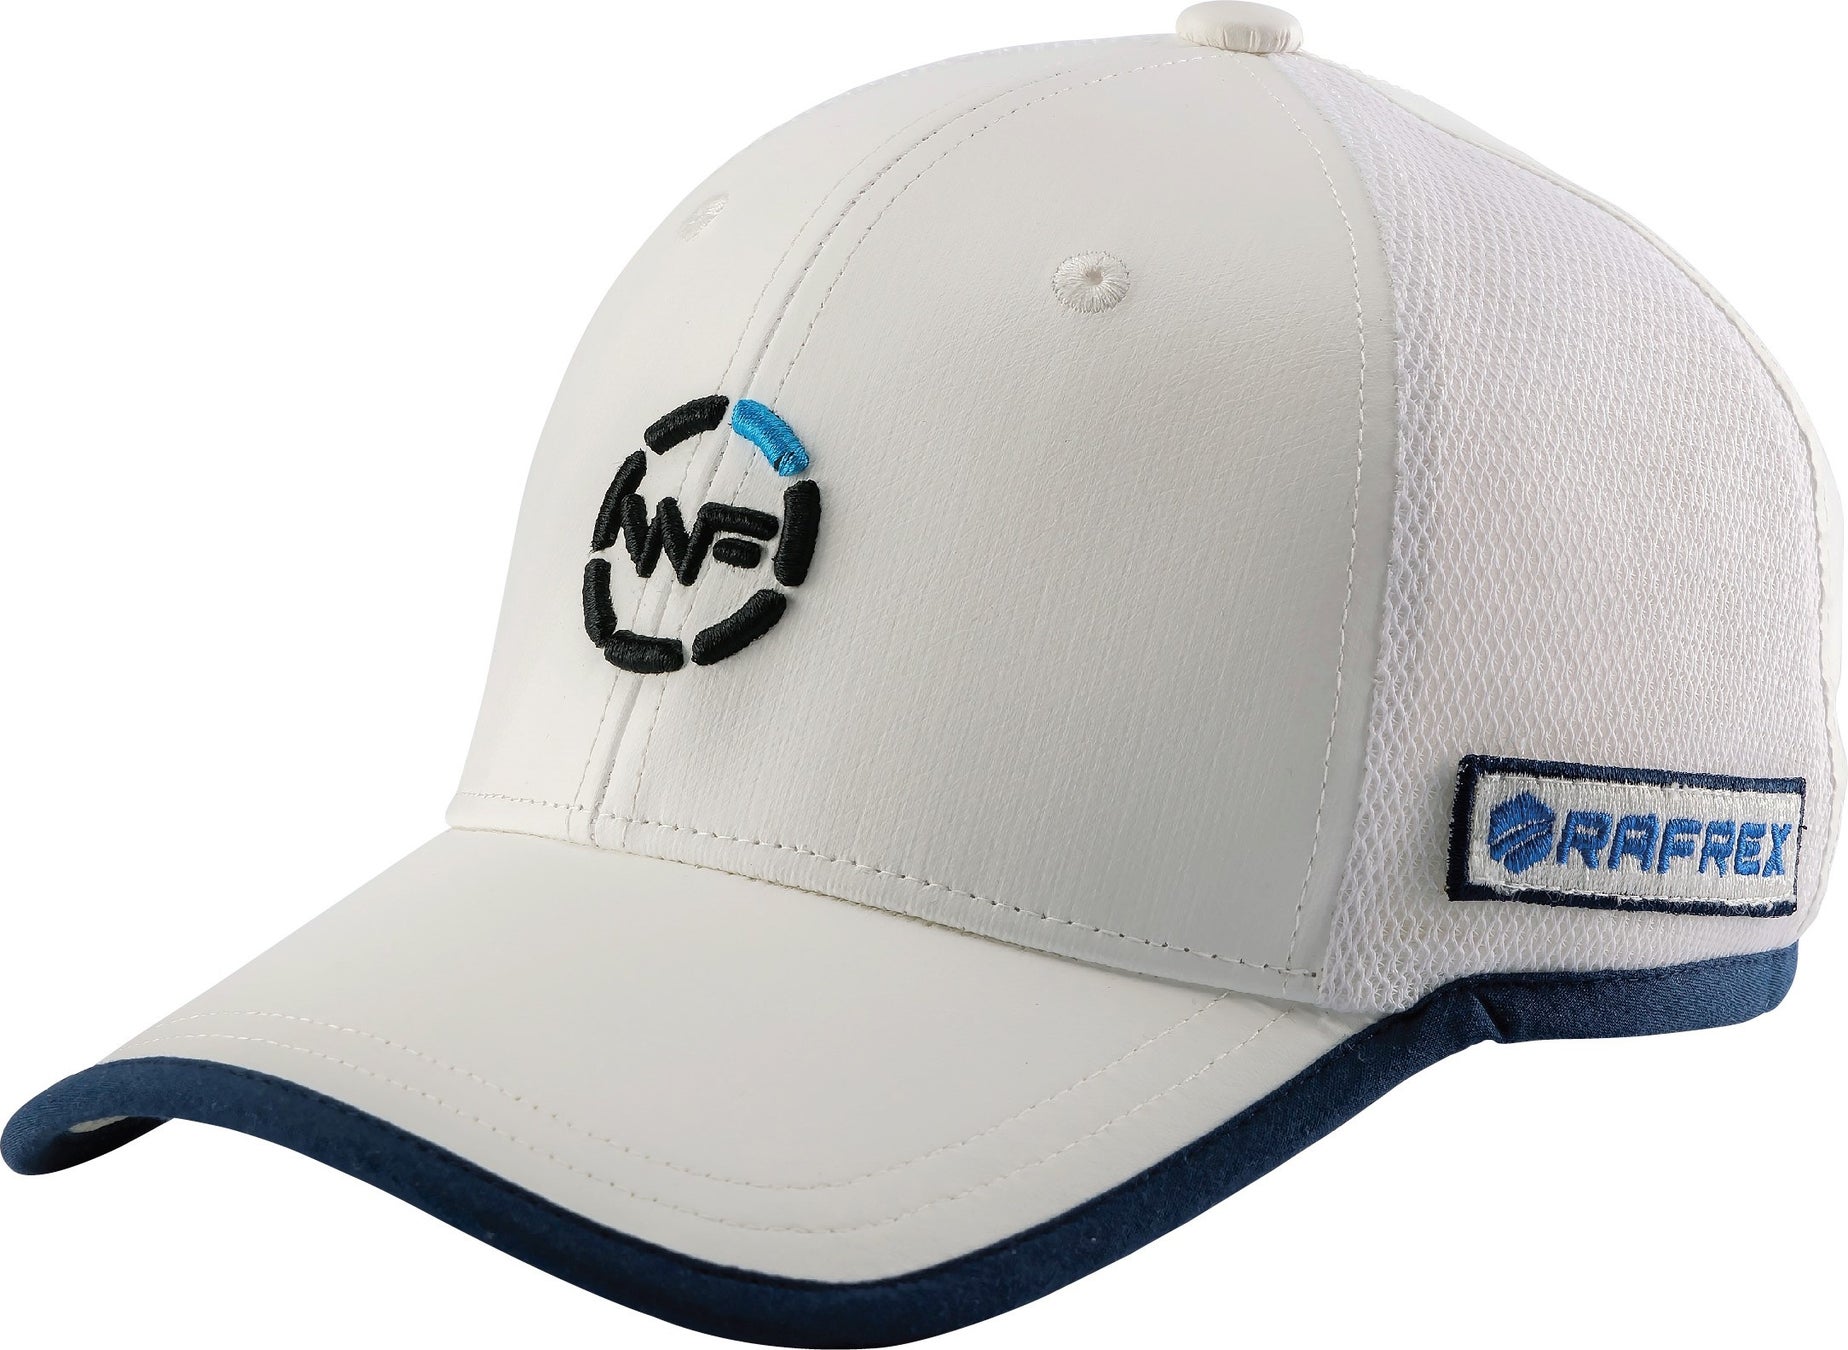 ゴルフを楽しむ人々に。【ラディ クール×キャスコ】暑い季節も快適にプレーできる放射冷却素材「Radi-Cool」を使用した帽子を発売のサブ画像2